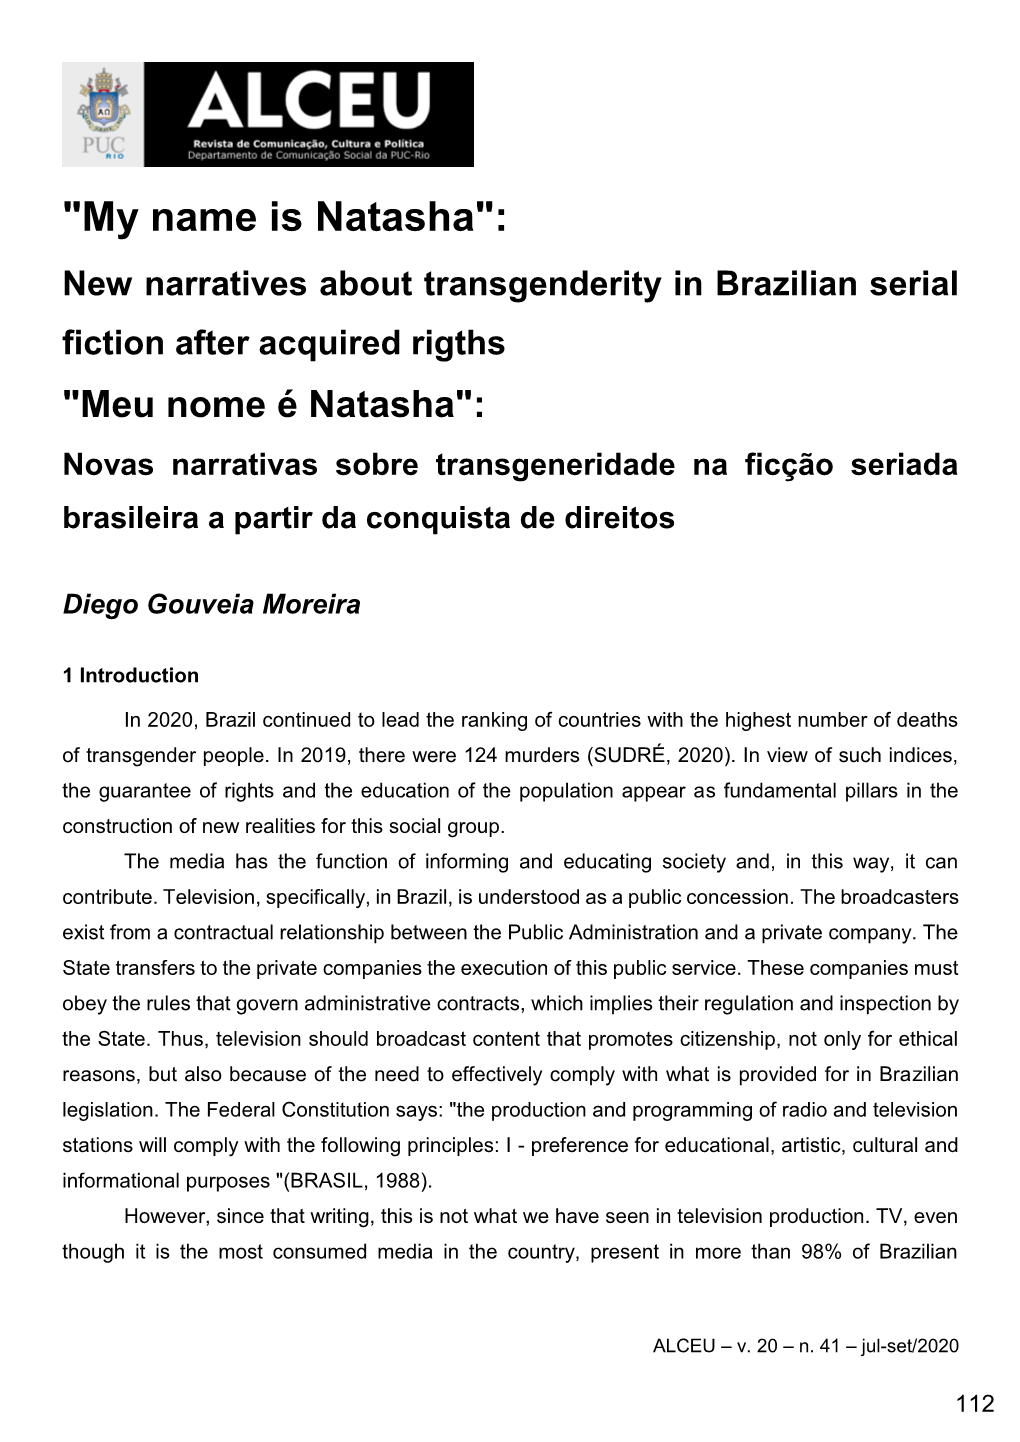 "My Name Is Natasha"